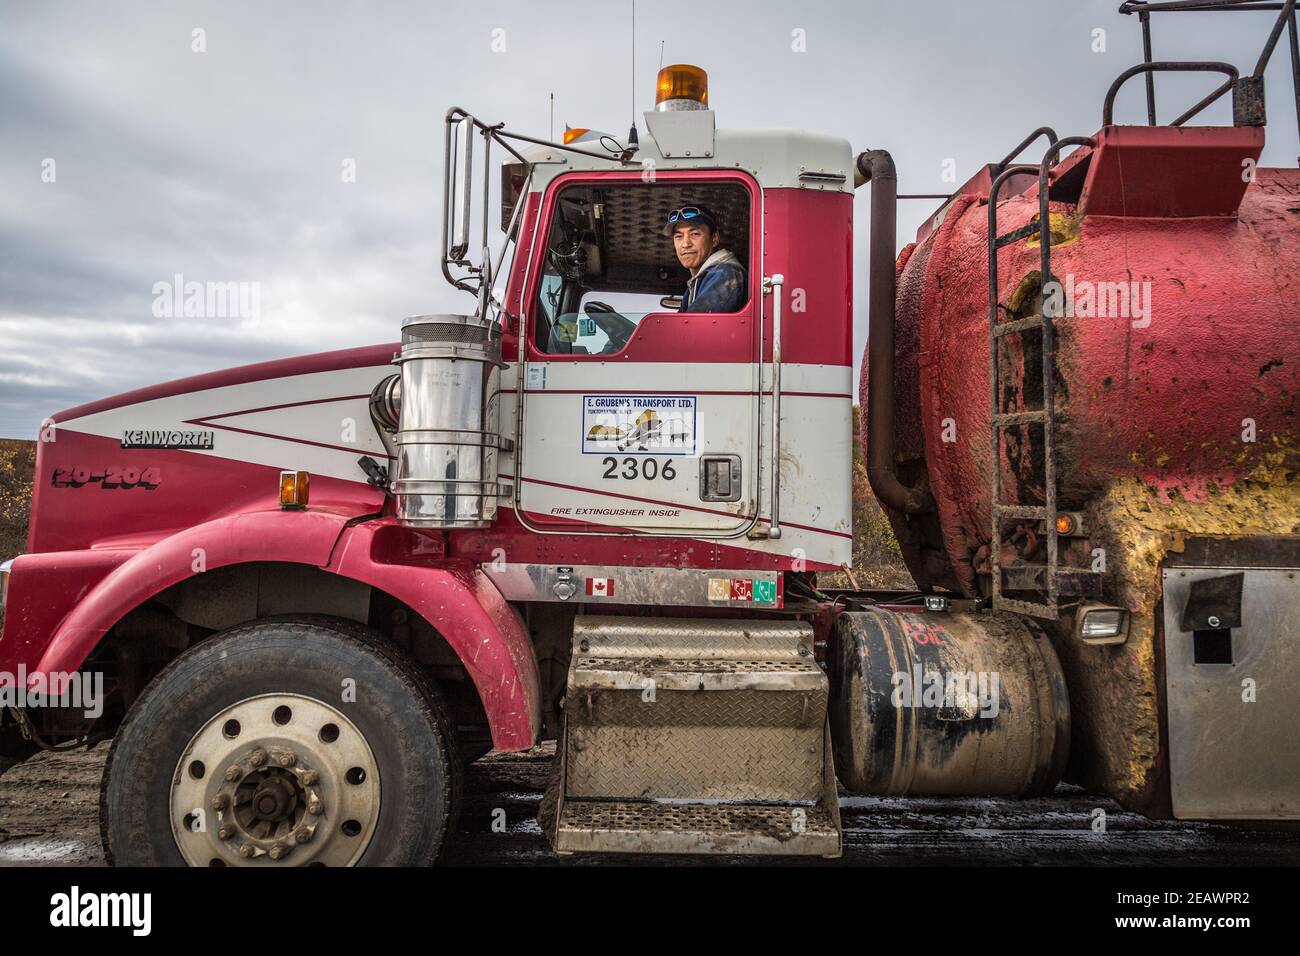 Chauffeur de camion autochtone pour E. Gruben's transport, pendant la construction de la route Inuvik-Tuktoyaktuk, dans les Territoires du Nord-Ouest, dans l'Arctique canadien Banque D'Images